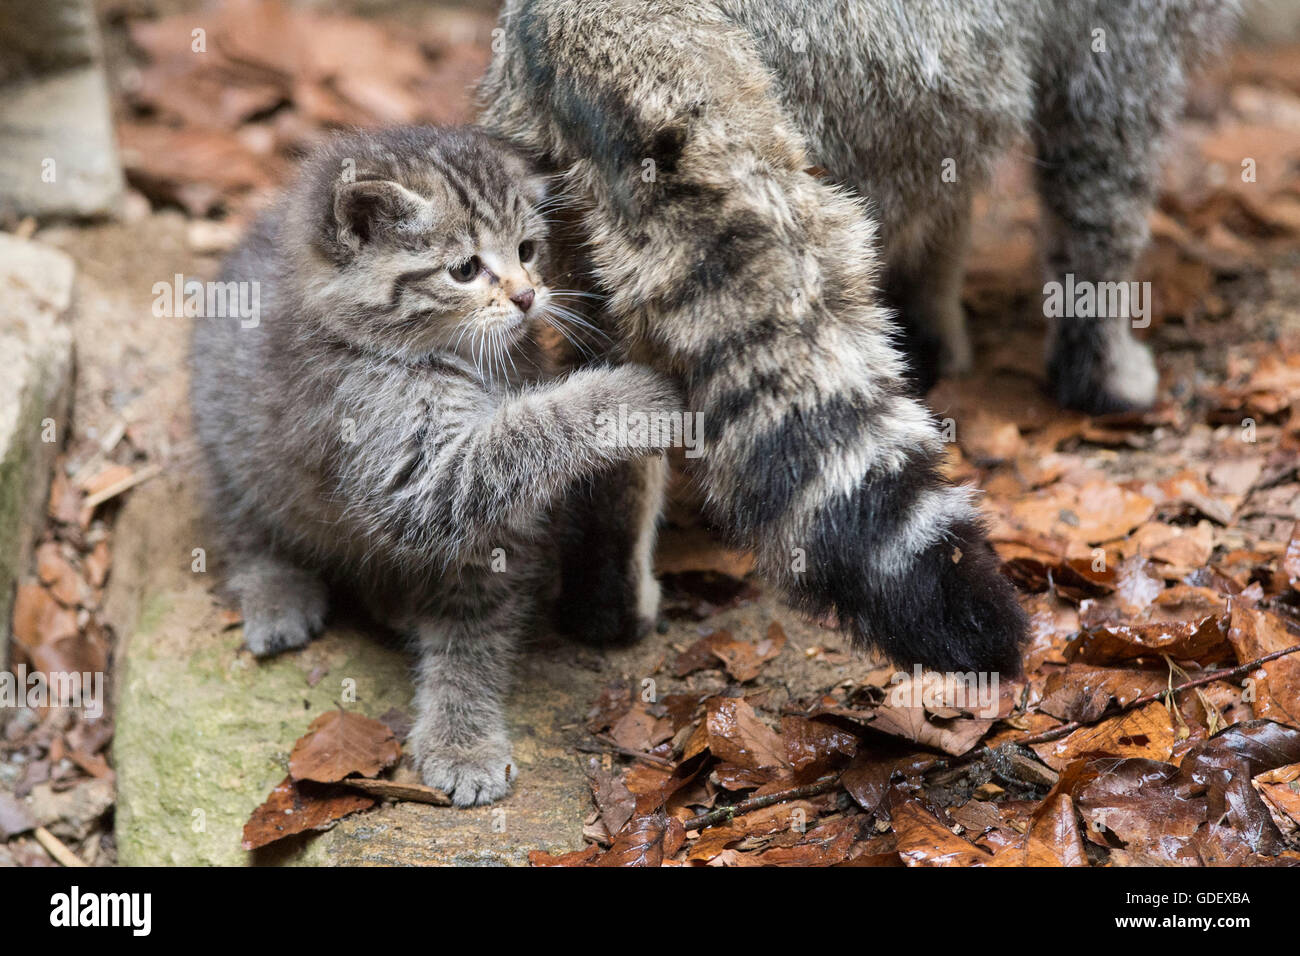 Comune gatto selvatico con un gattino, Parco Nazionale della Foresta Bavarese, Baviera, Germania, Felis silvestris Foto Stock